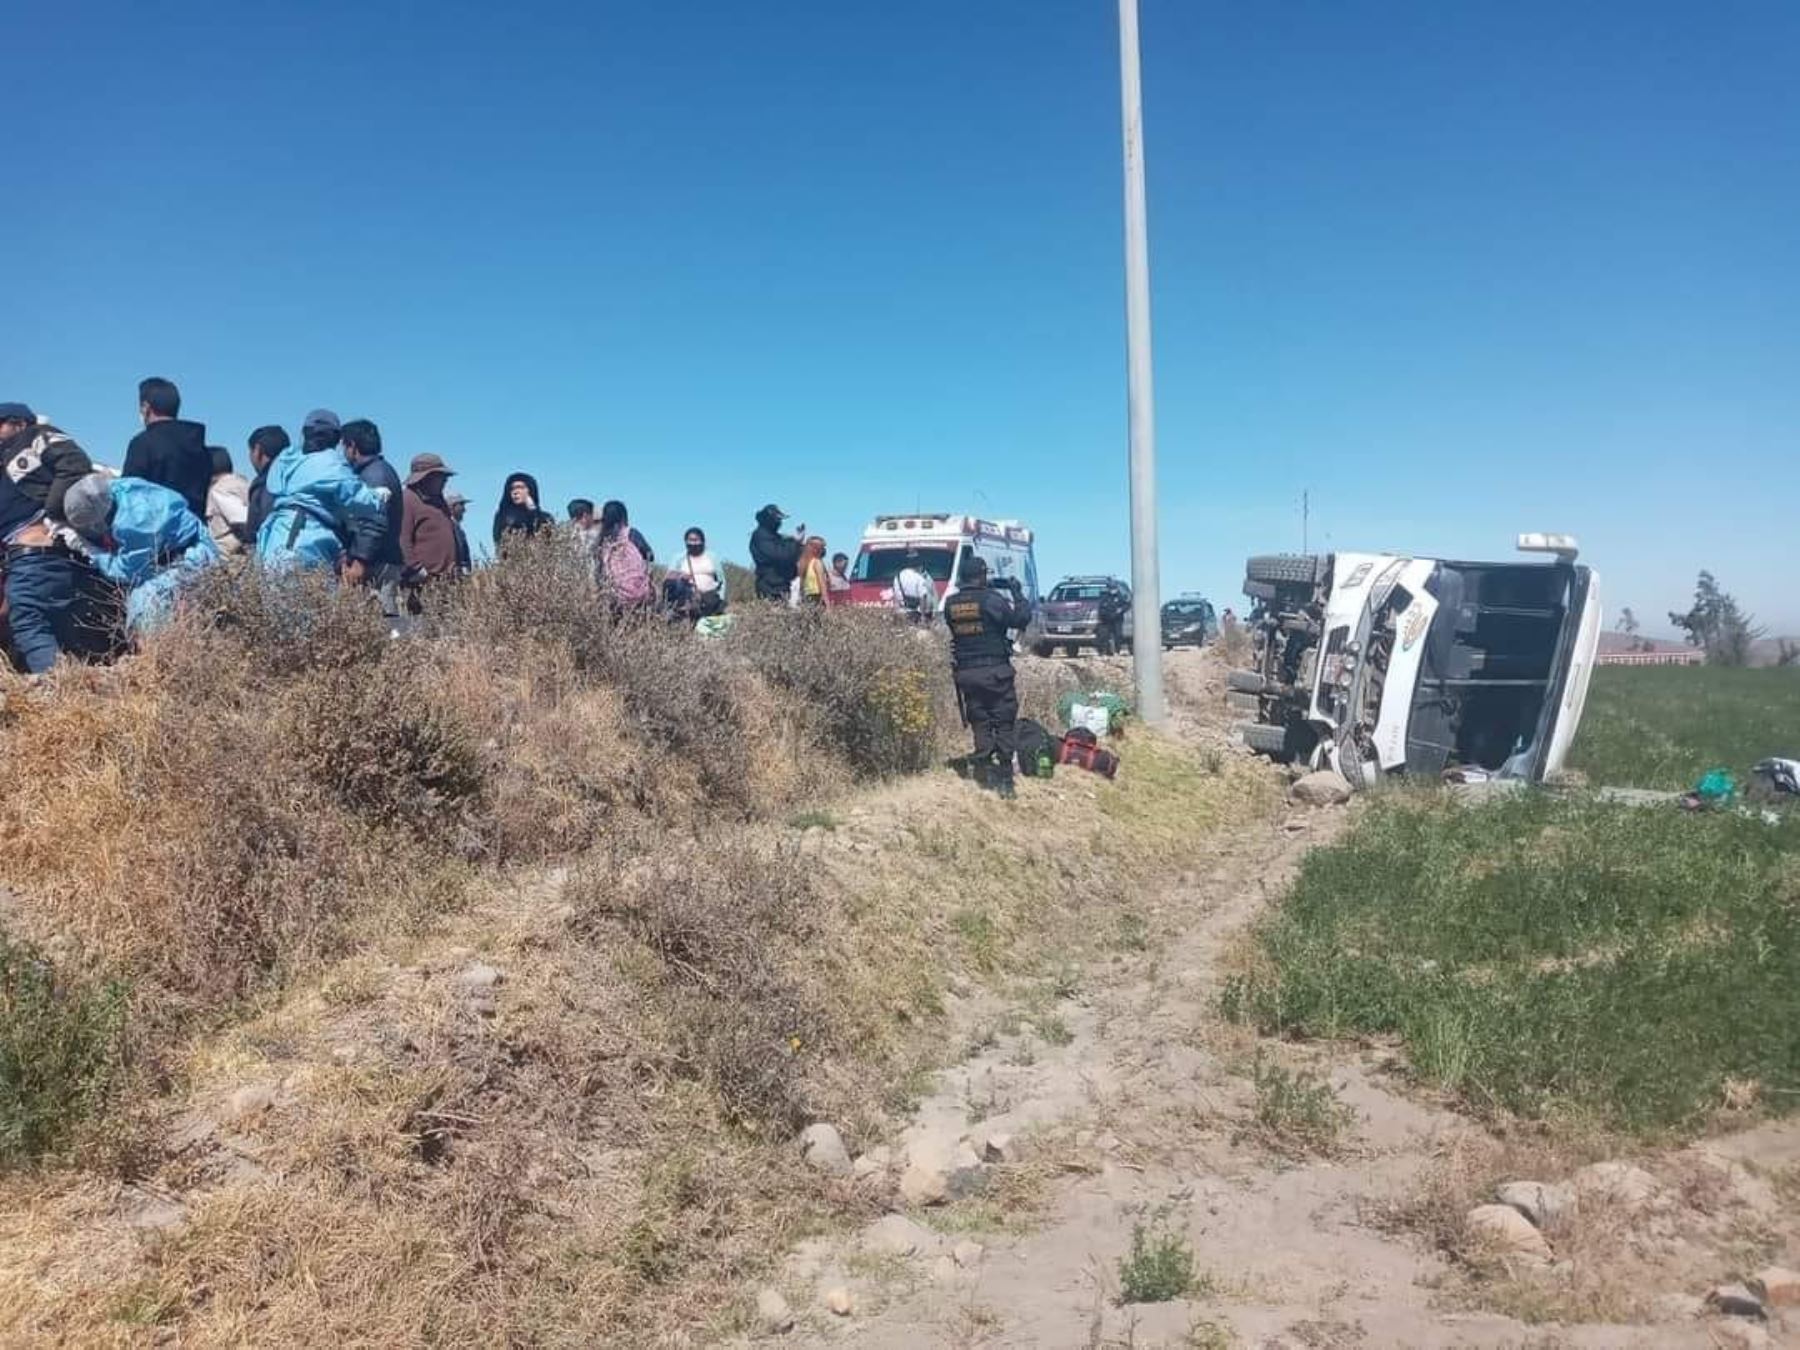 Despiste de bus interprovincial en distrito de Chiguata, región Arequipa deja diez personas heridas. Foto: Cortesía: Reportando Moquegua/Facebook